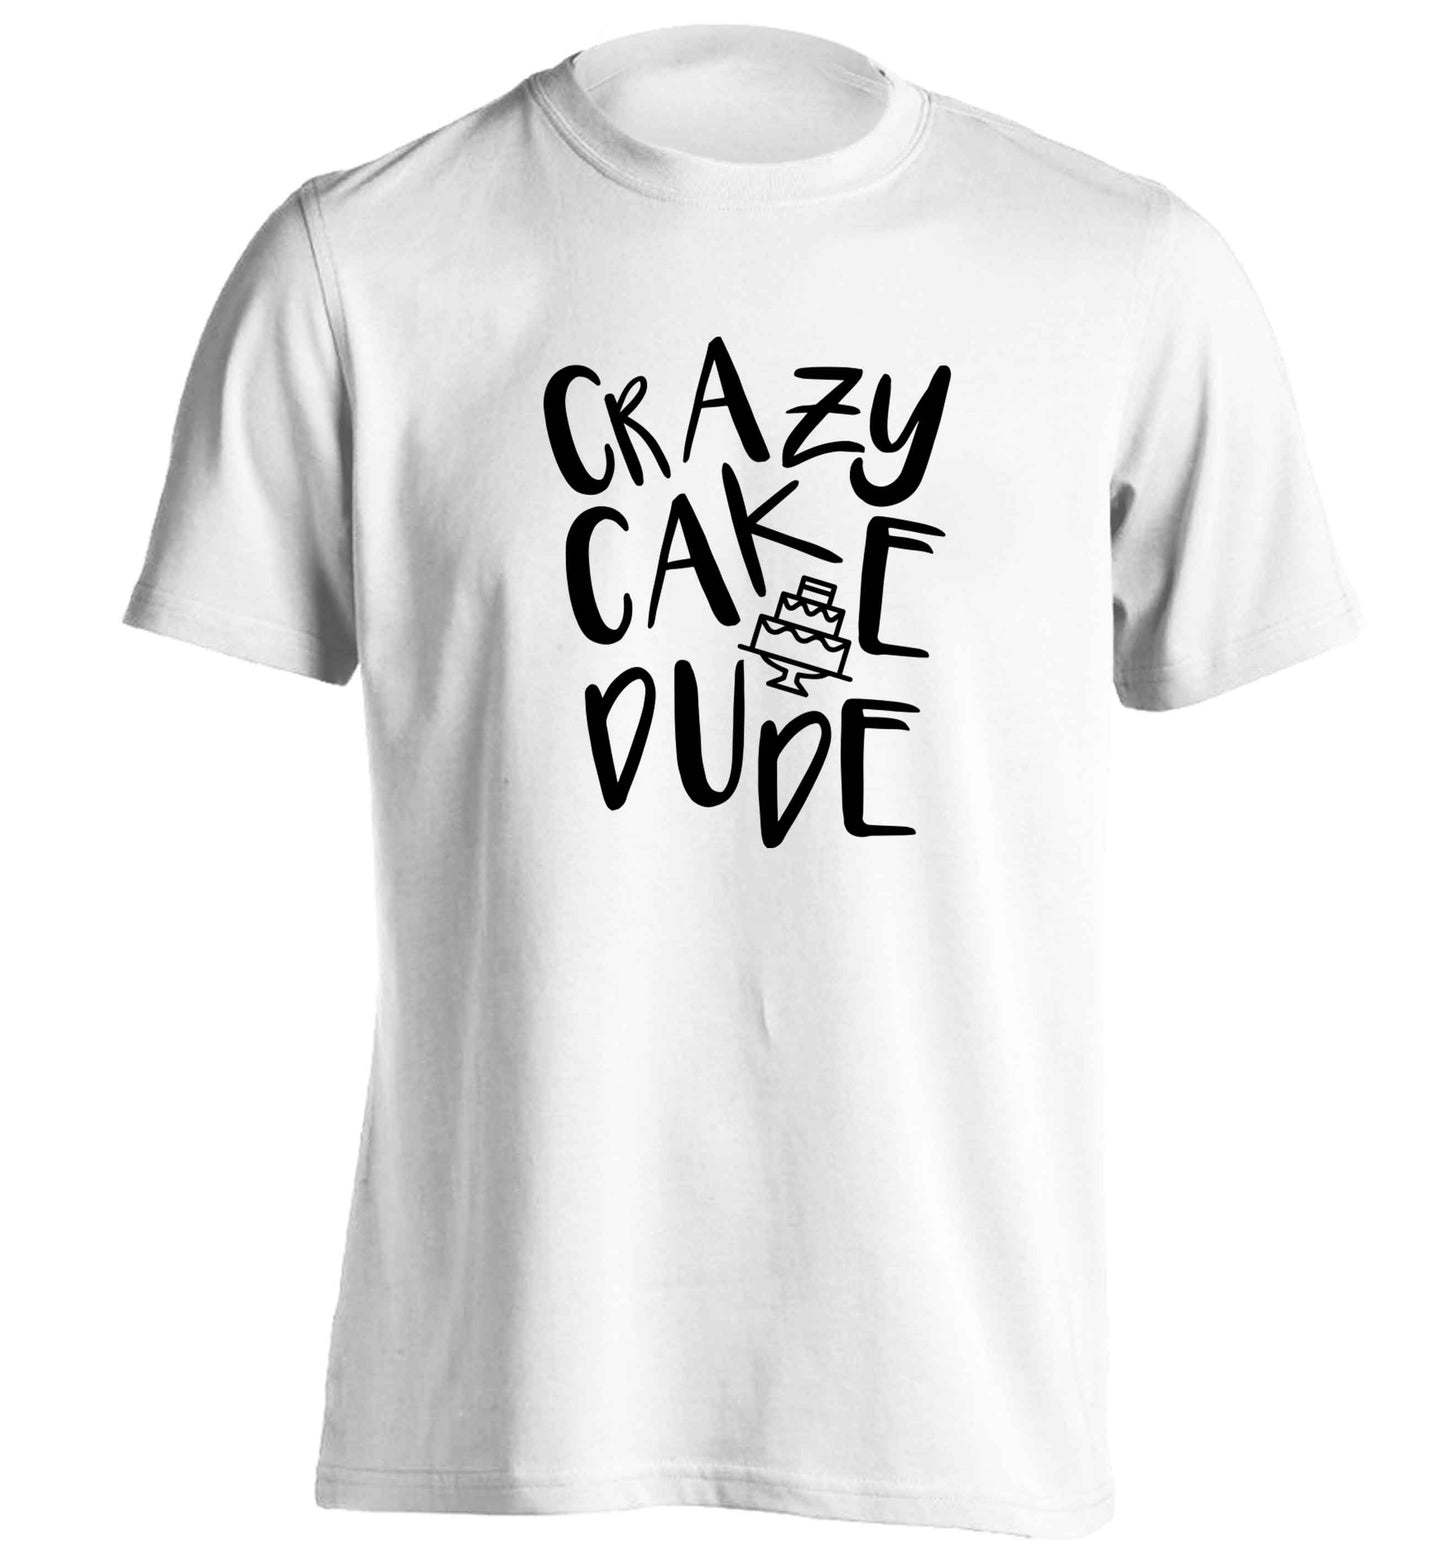 Crazy cake dude adults unisex white Tshirt 2XL